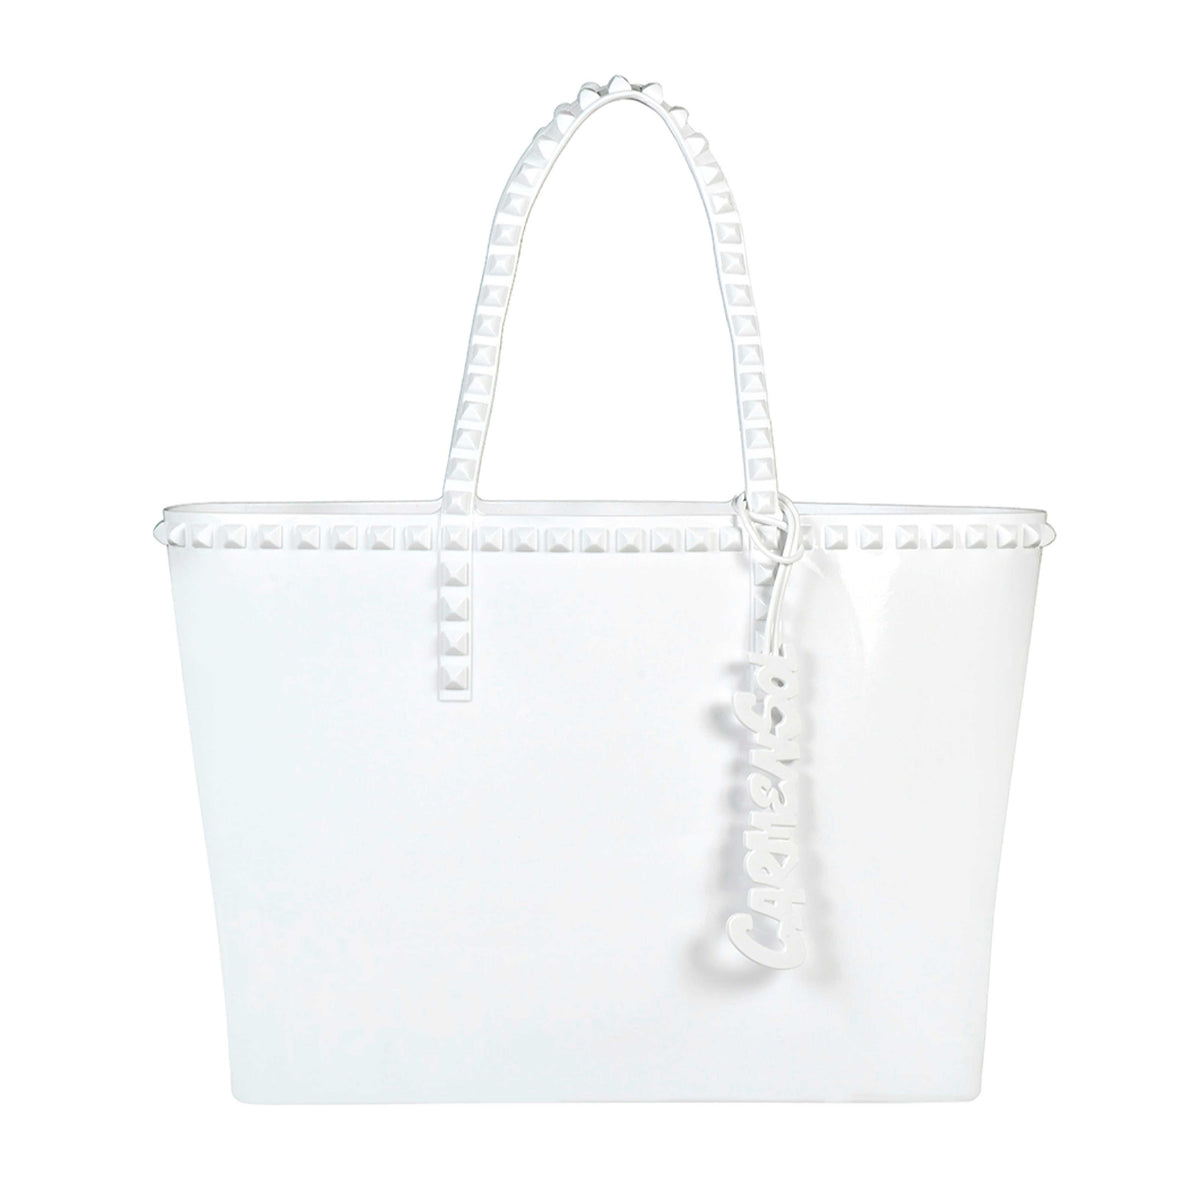 Seba Carmen Sol beach bags for women in color white